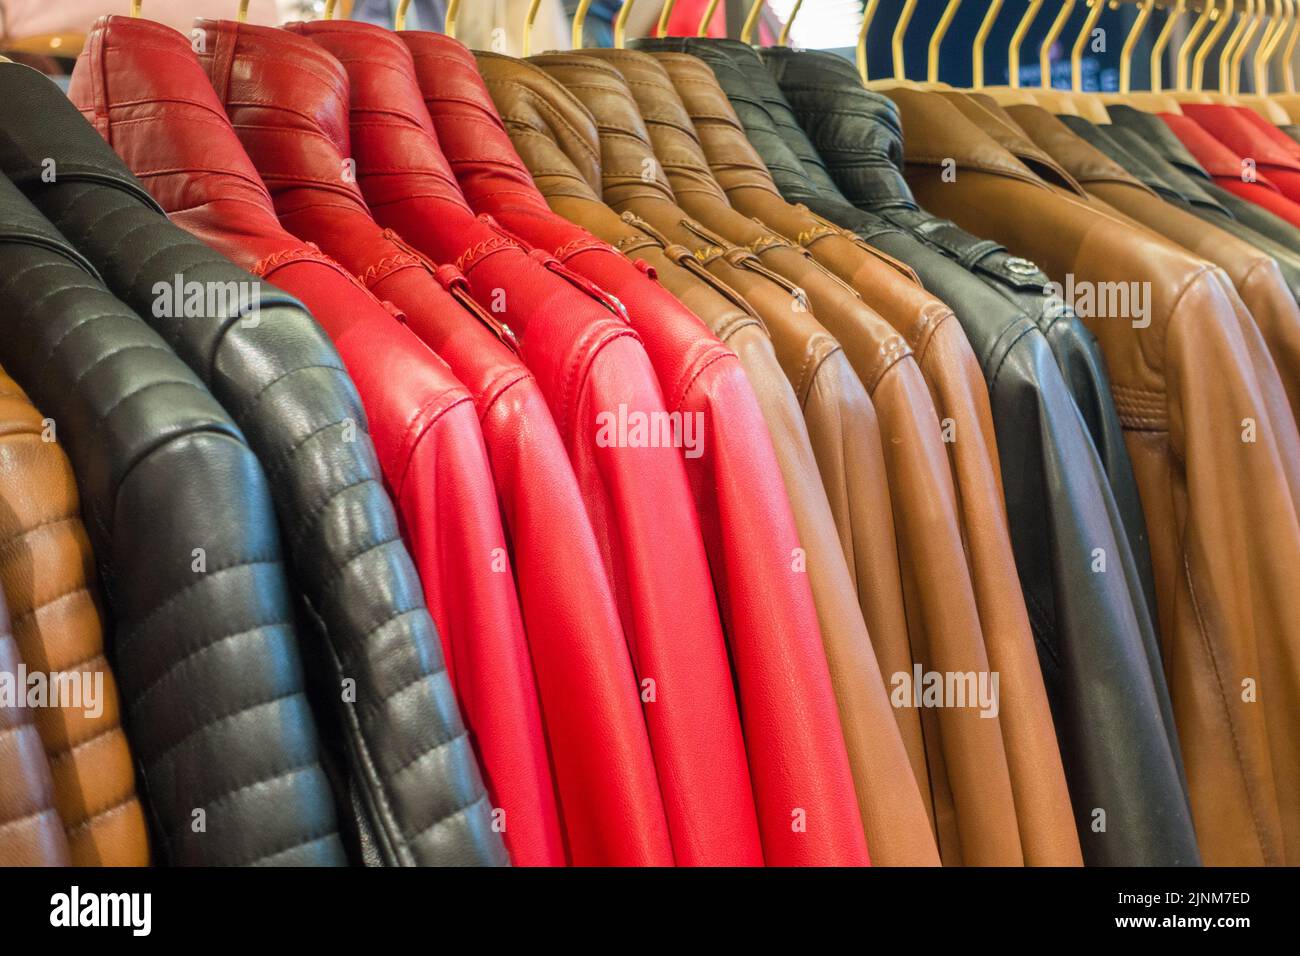 Vestes en cuir sur le porte-vêtements en magasin. Magnifique collection de vestes en cuir de différentes couleurs. Banque D'Images